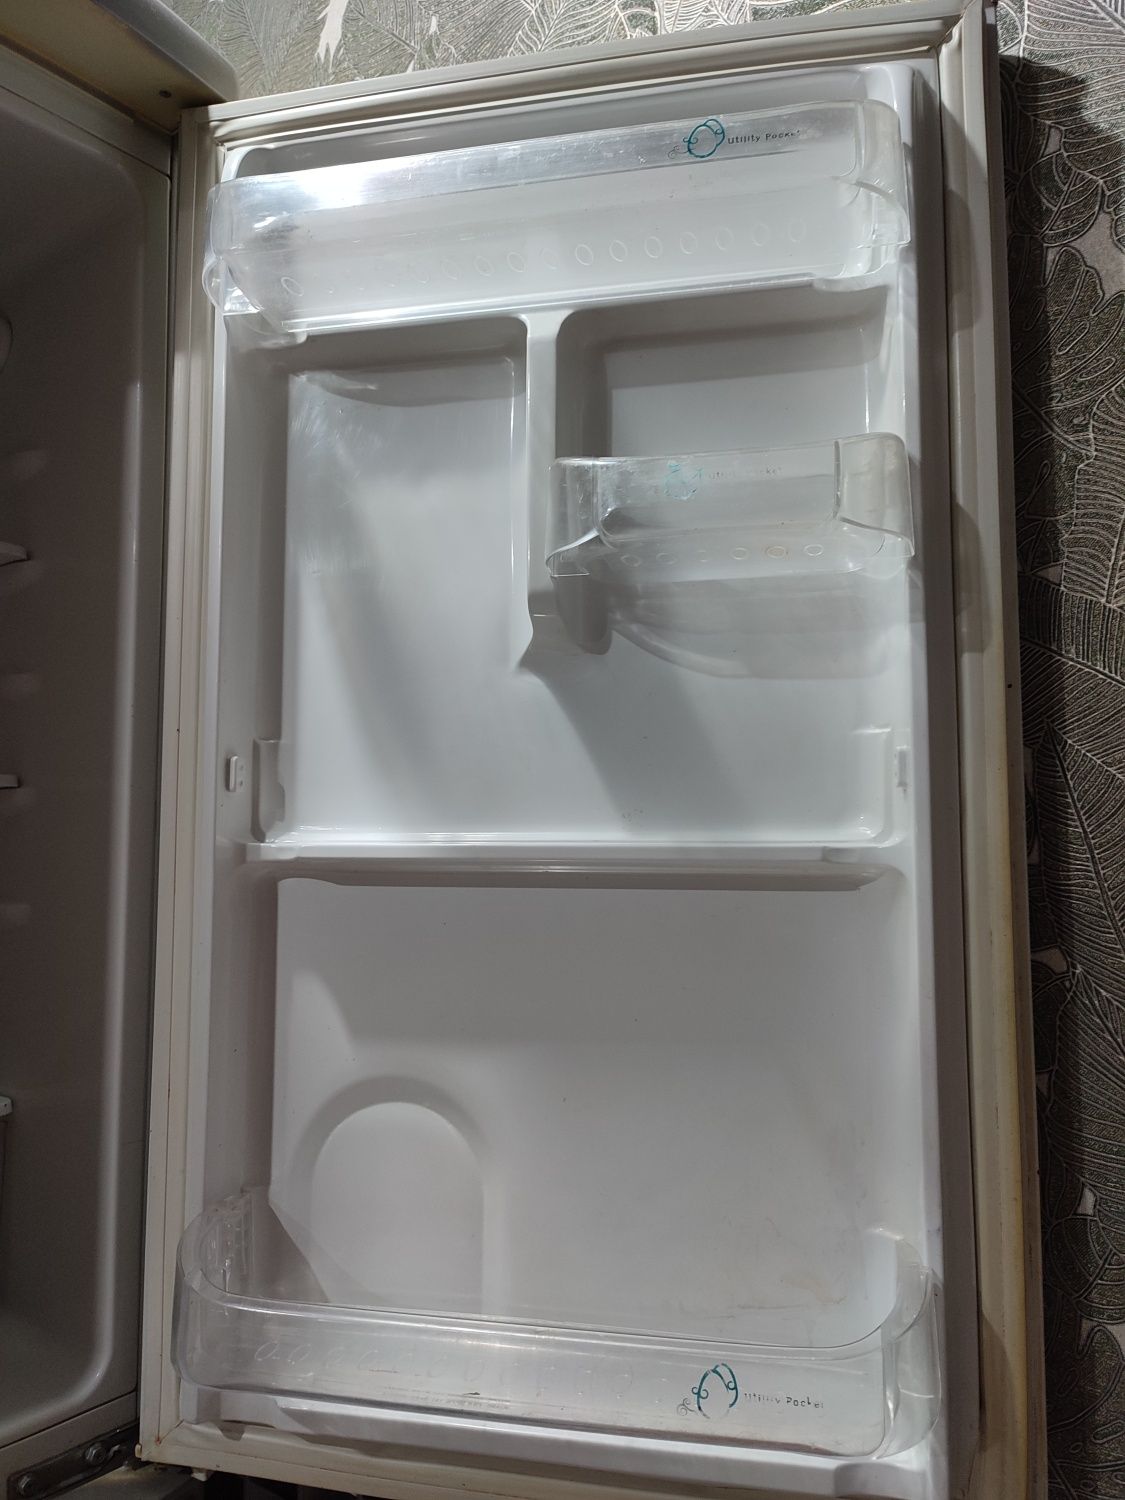 Холодильник Samsung в рабочем состоянии